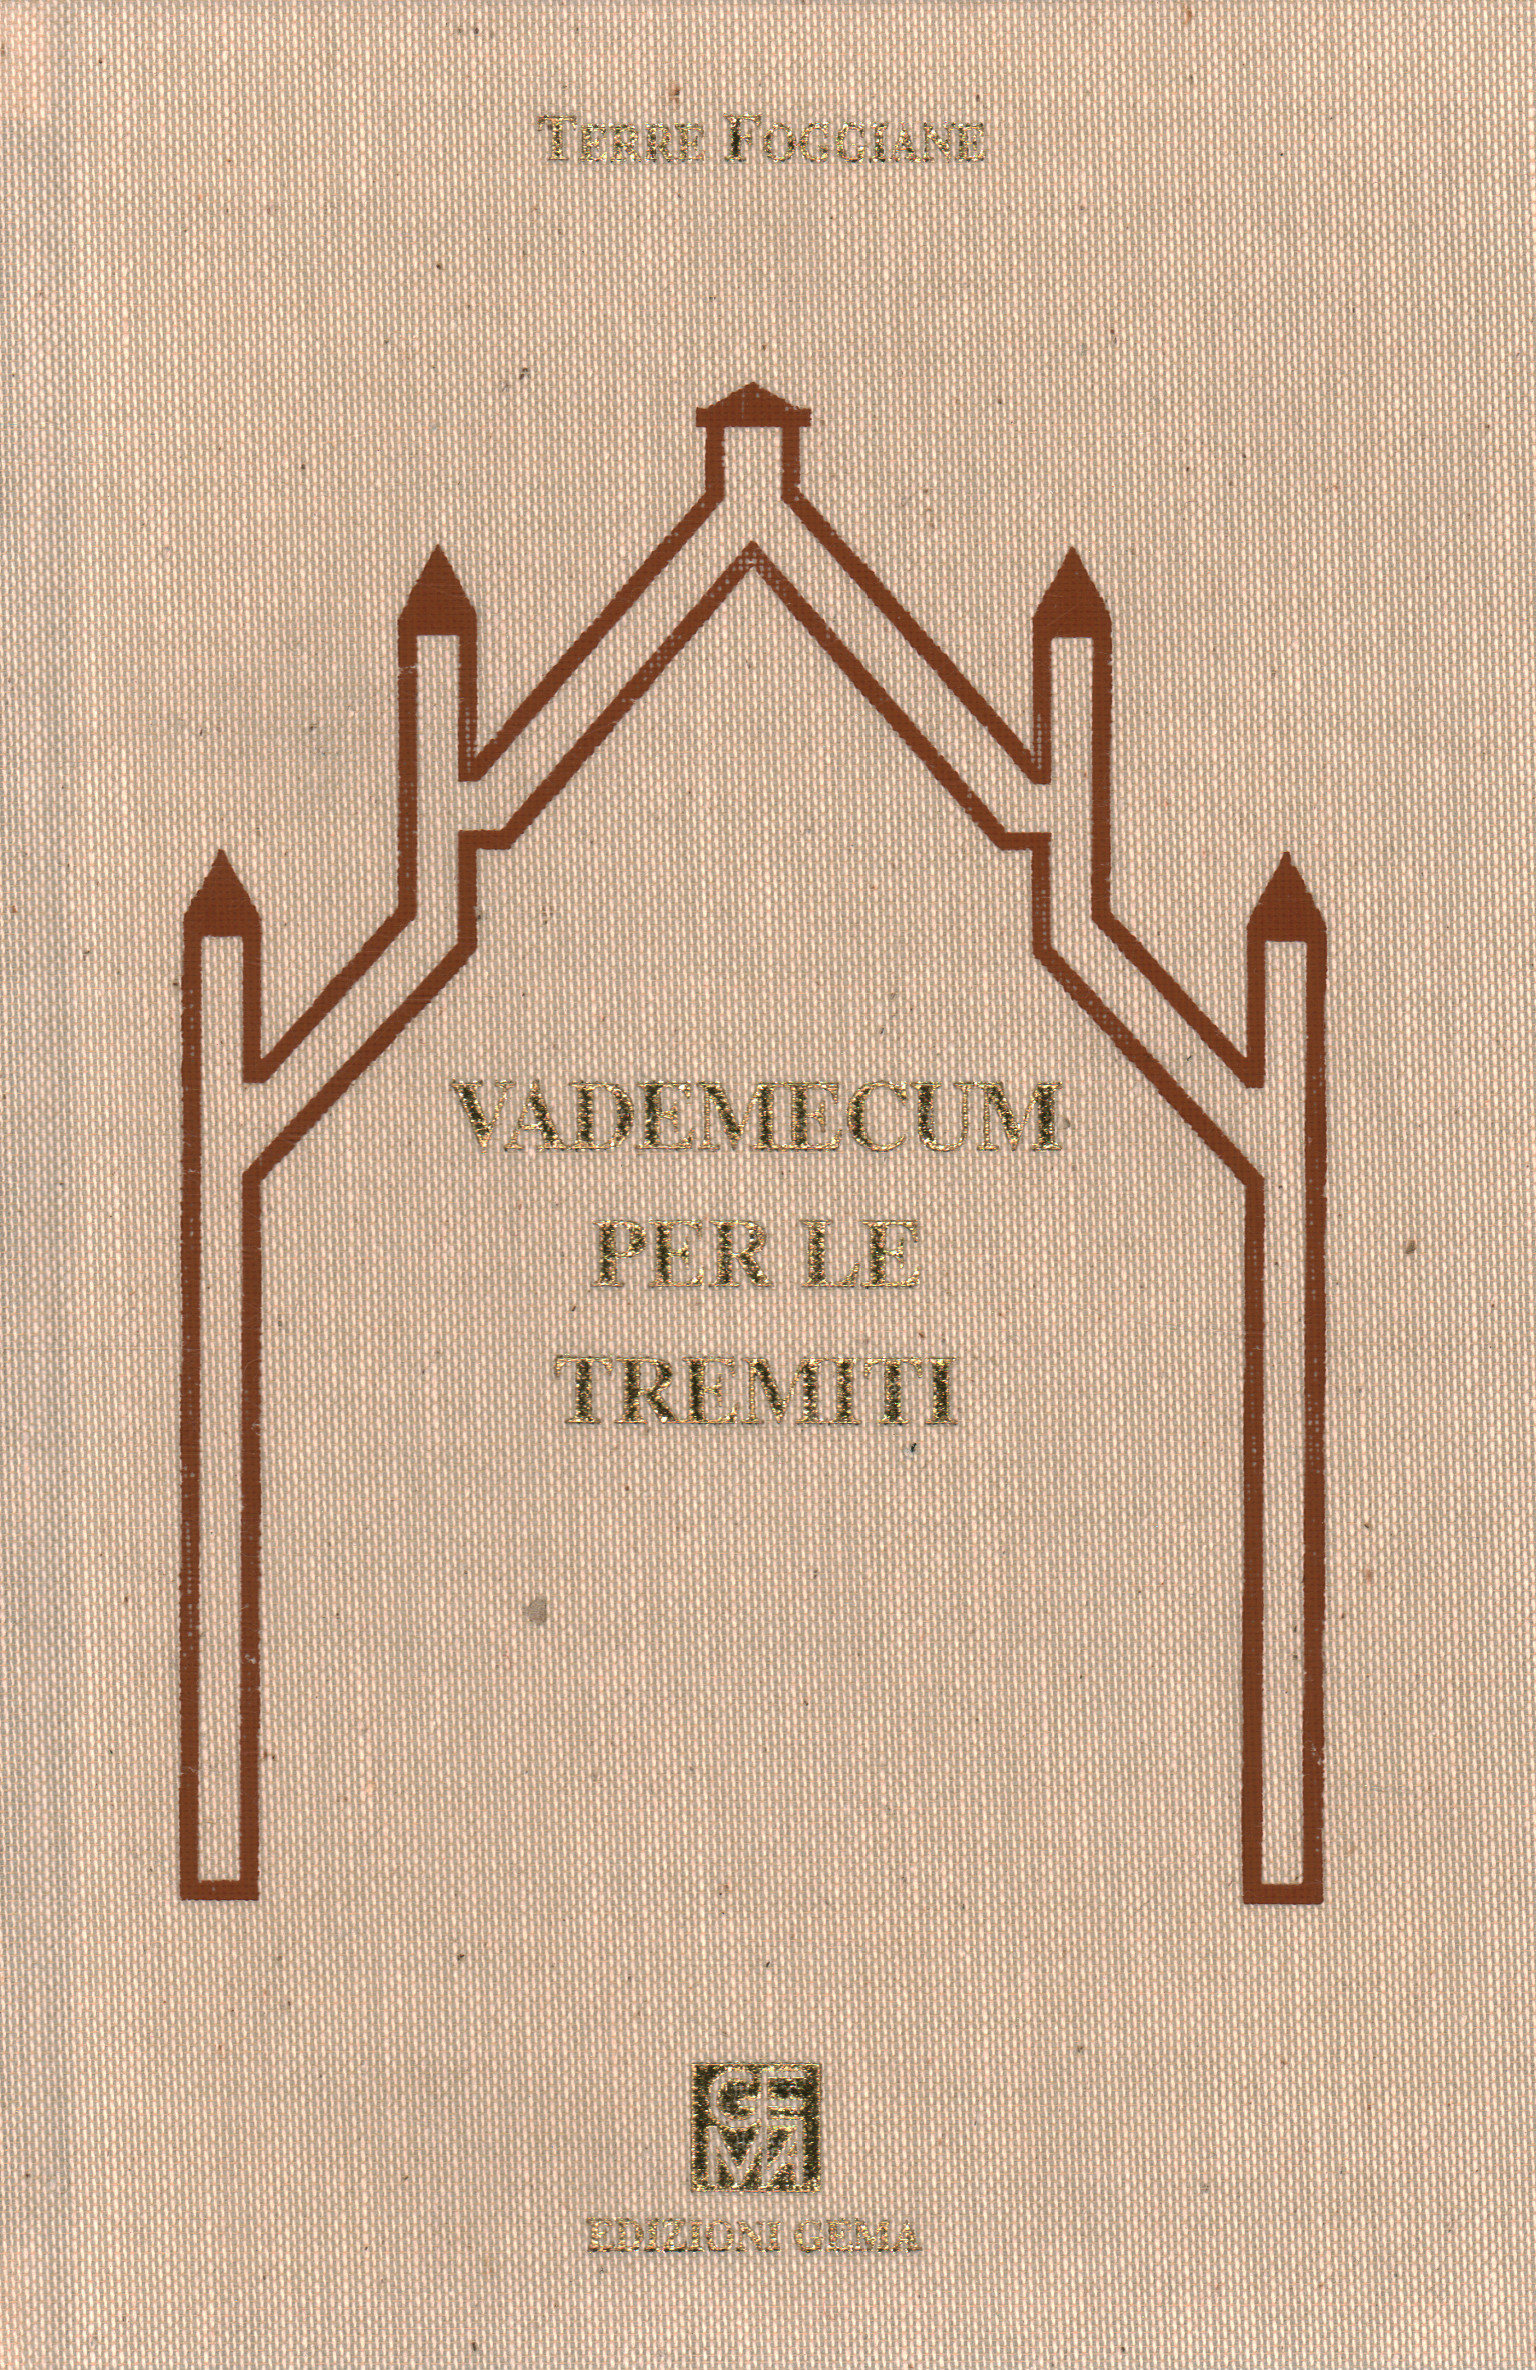 Vademecum for the Tremiti, Lanfranco Tavasci Marco Squarcini